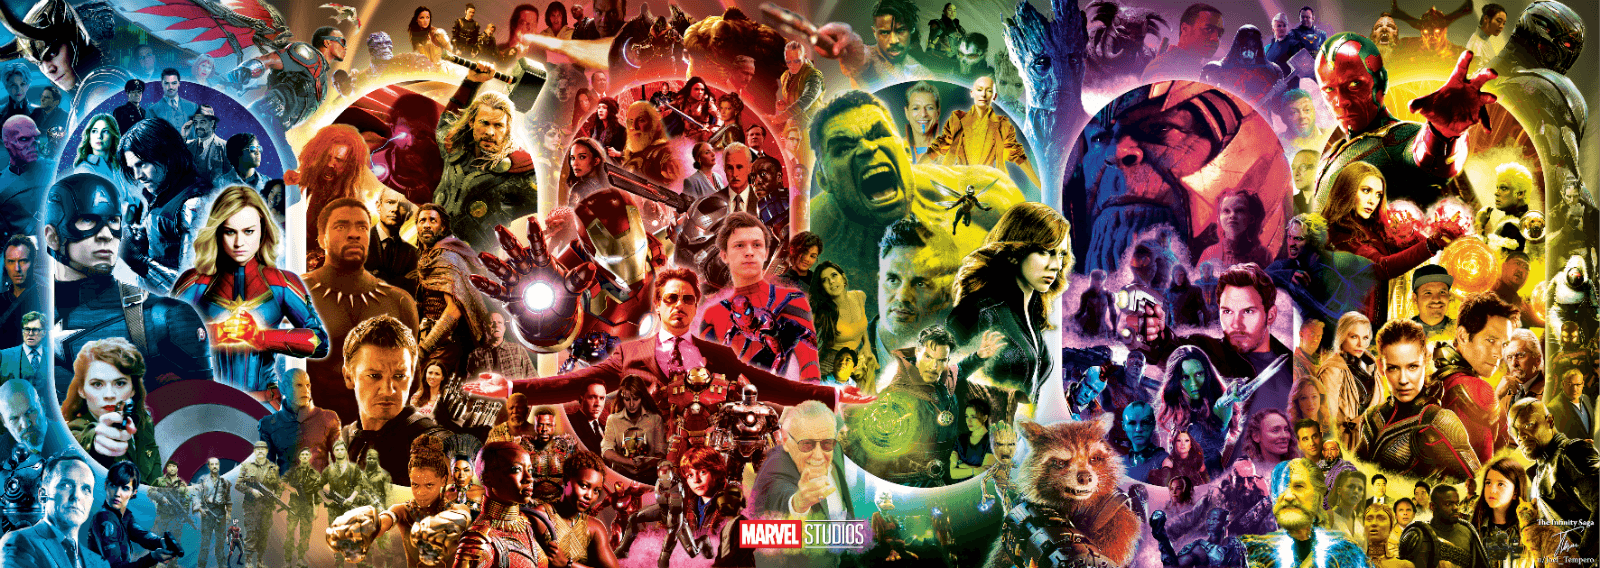 Tải về miễn phí bộ sưu tập hình nền Marvel Universe với độ phân giải 1600x568pixels để trang trí máy tính của bạn. Hầu hết các nhân vật huyền thoại của vũ trụ Marvel đều có mặt trong bộ sưu tập này. 